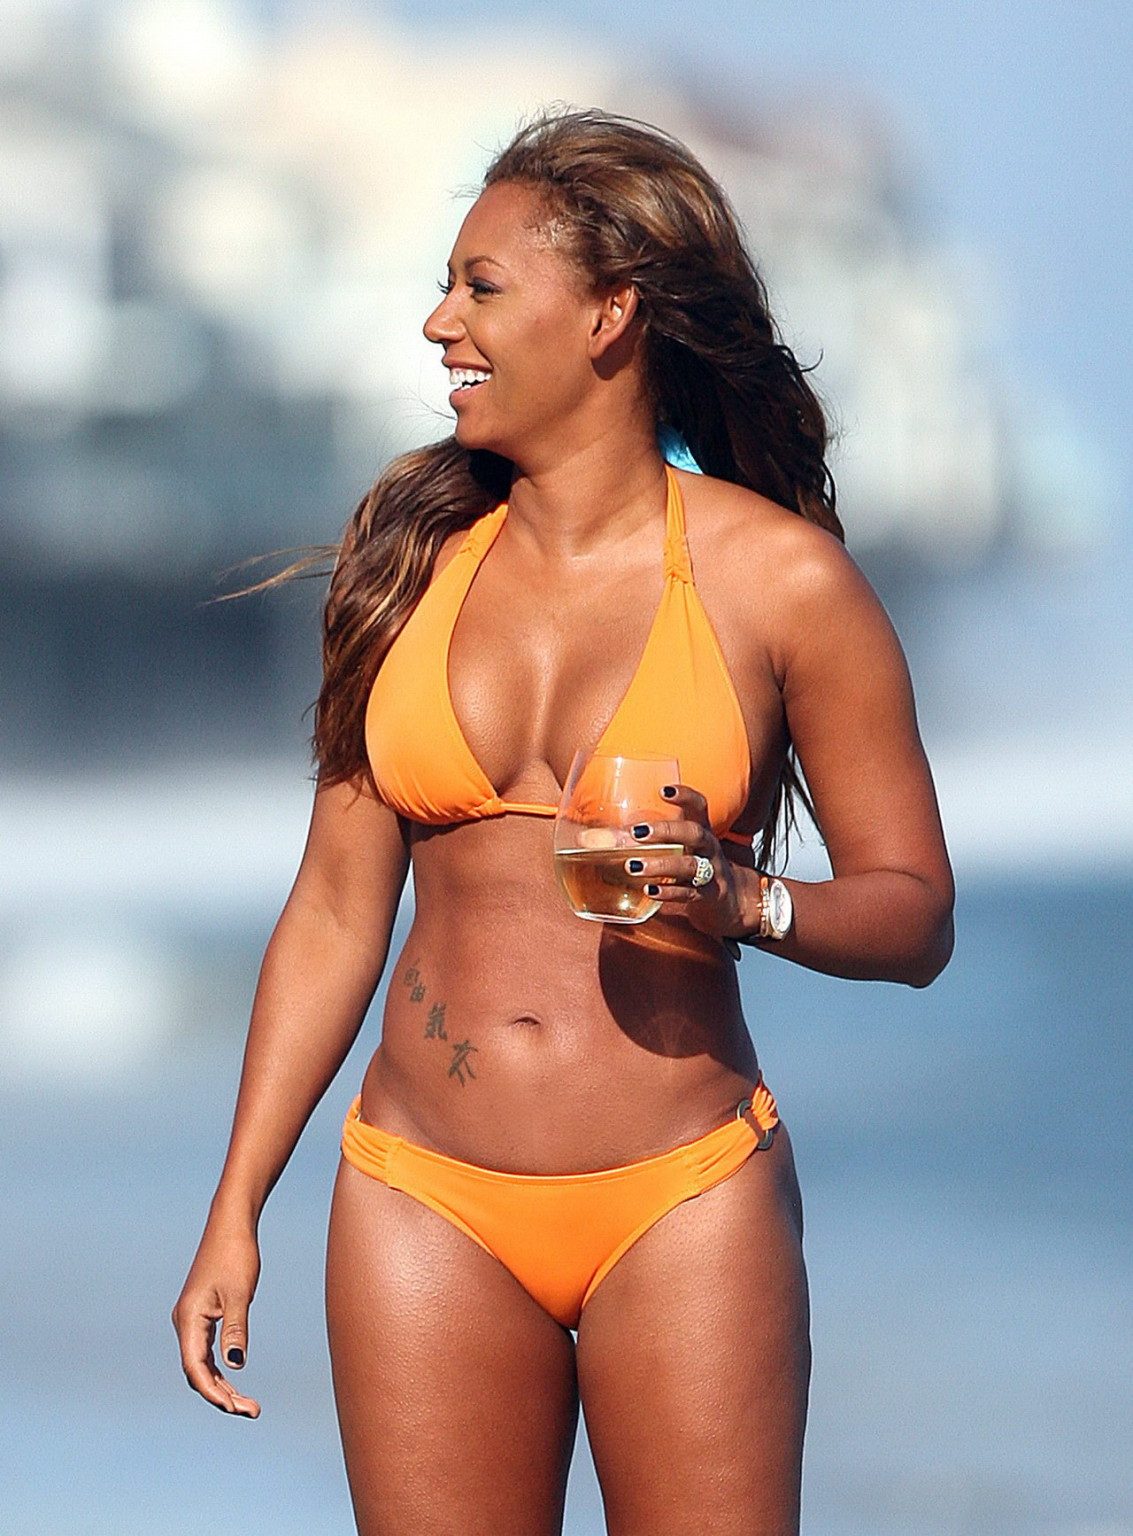 Melanie brown montre ses gros seins et ses fesses rondes dans un bikini orange très léger sur la plage.
 #75339642